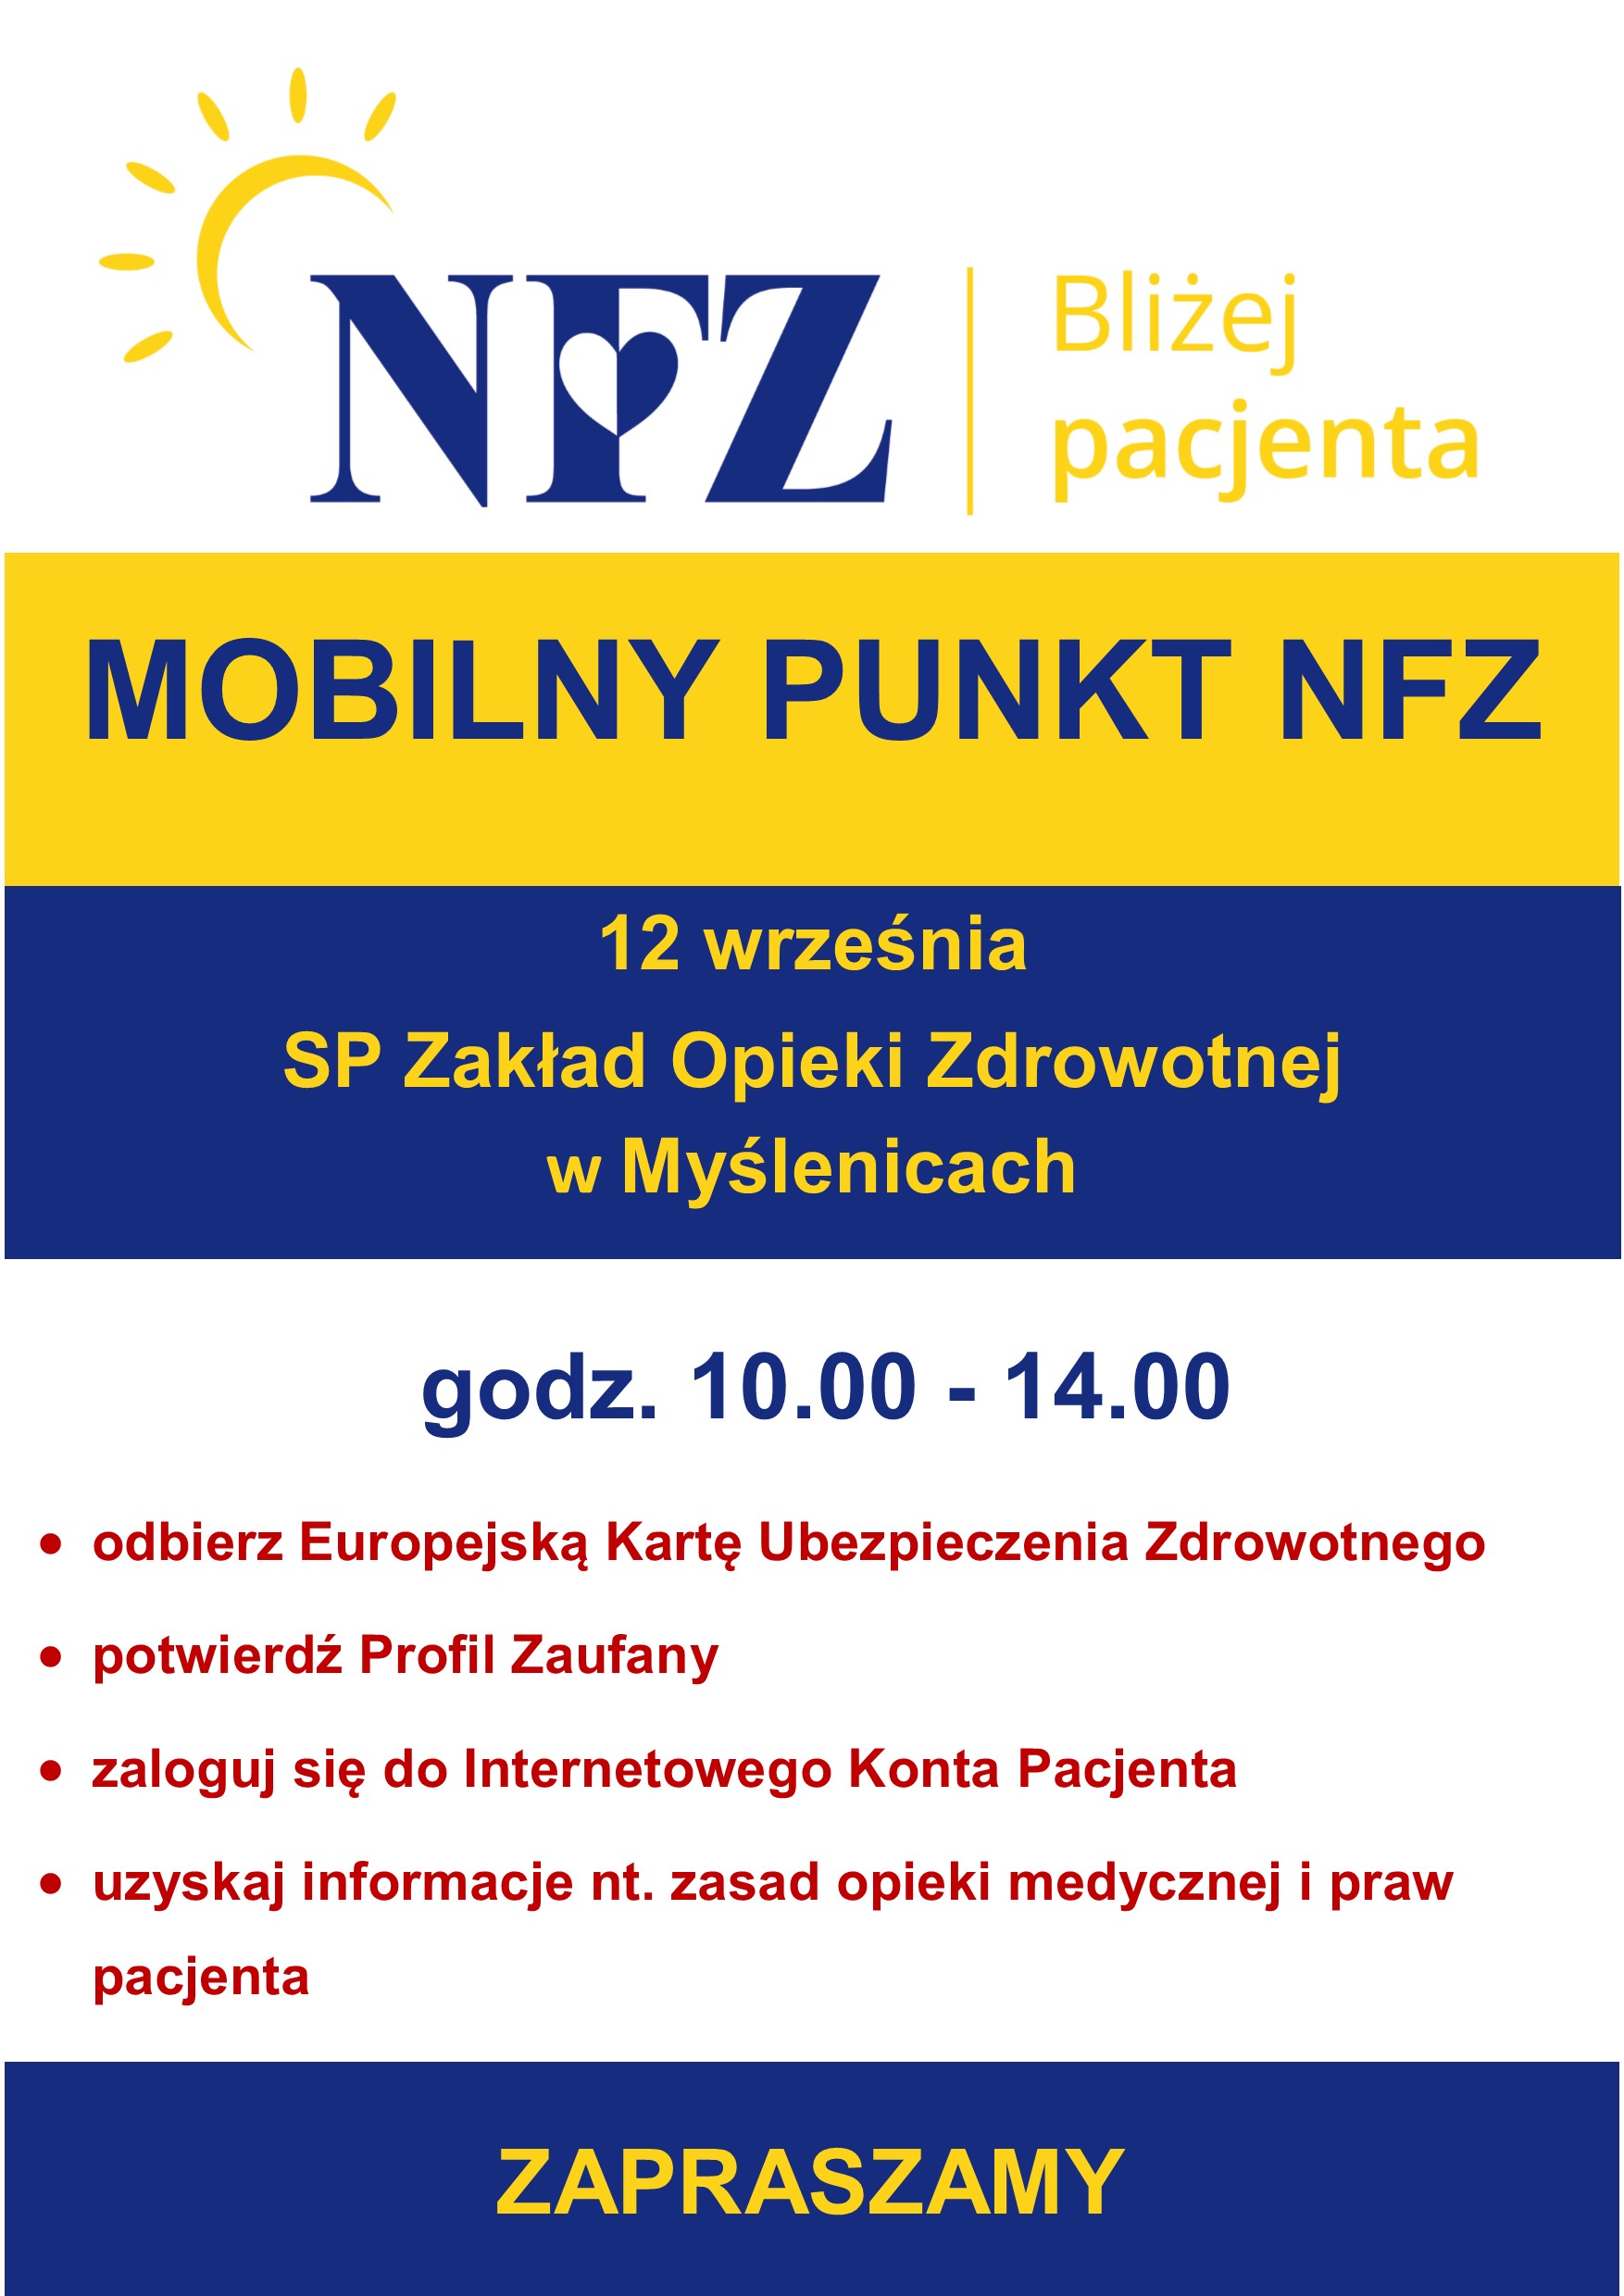 Plakat informujący o Mobilnym Punkcie NFZ 12 września w SP ZOZ w Myślenicach